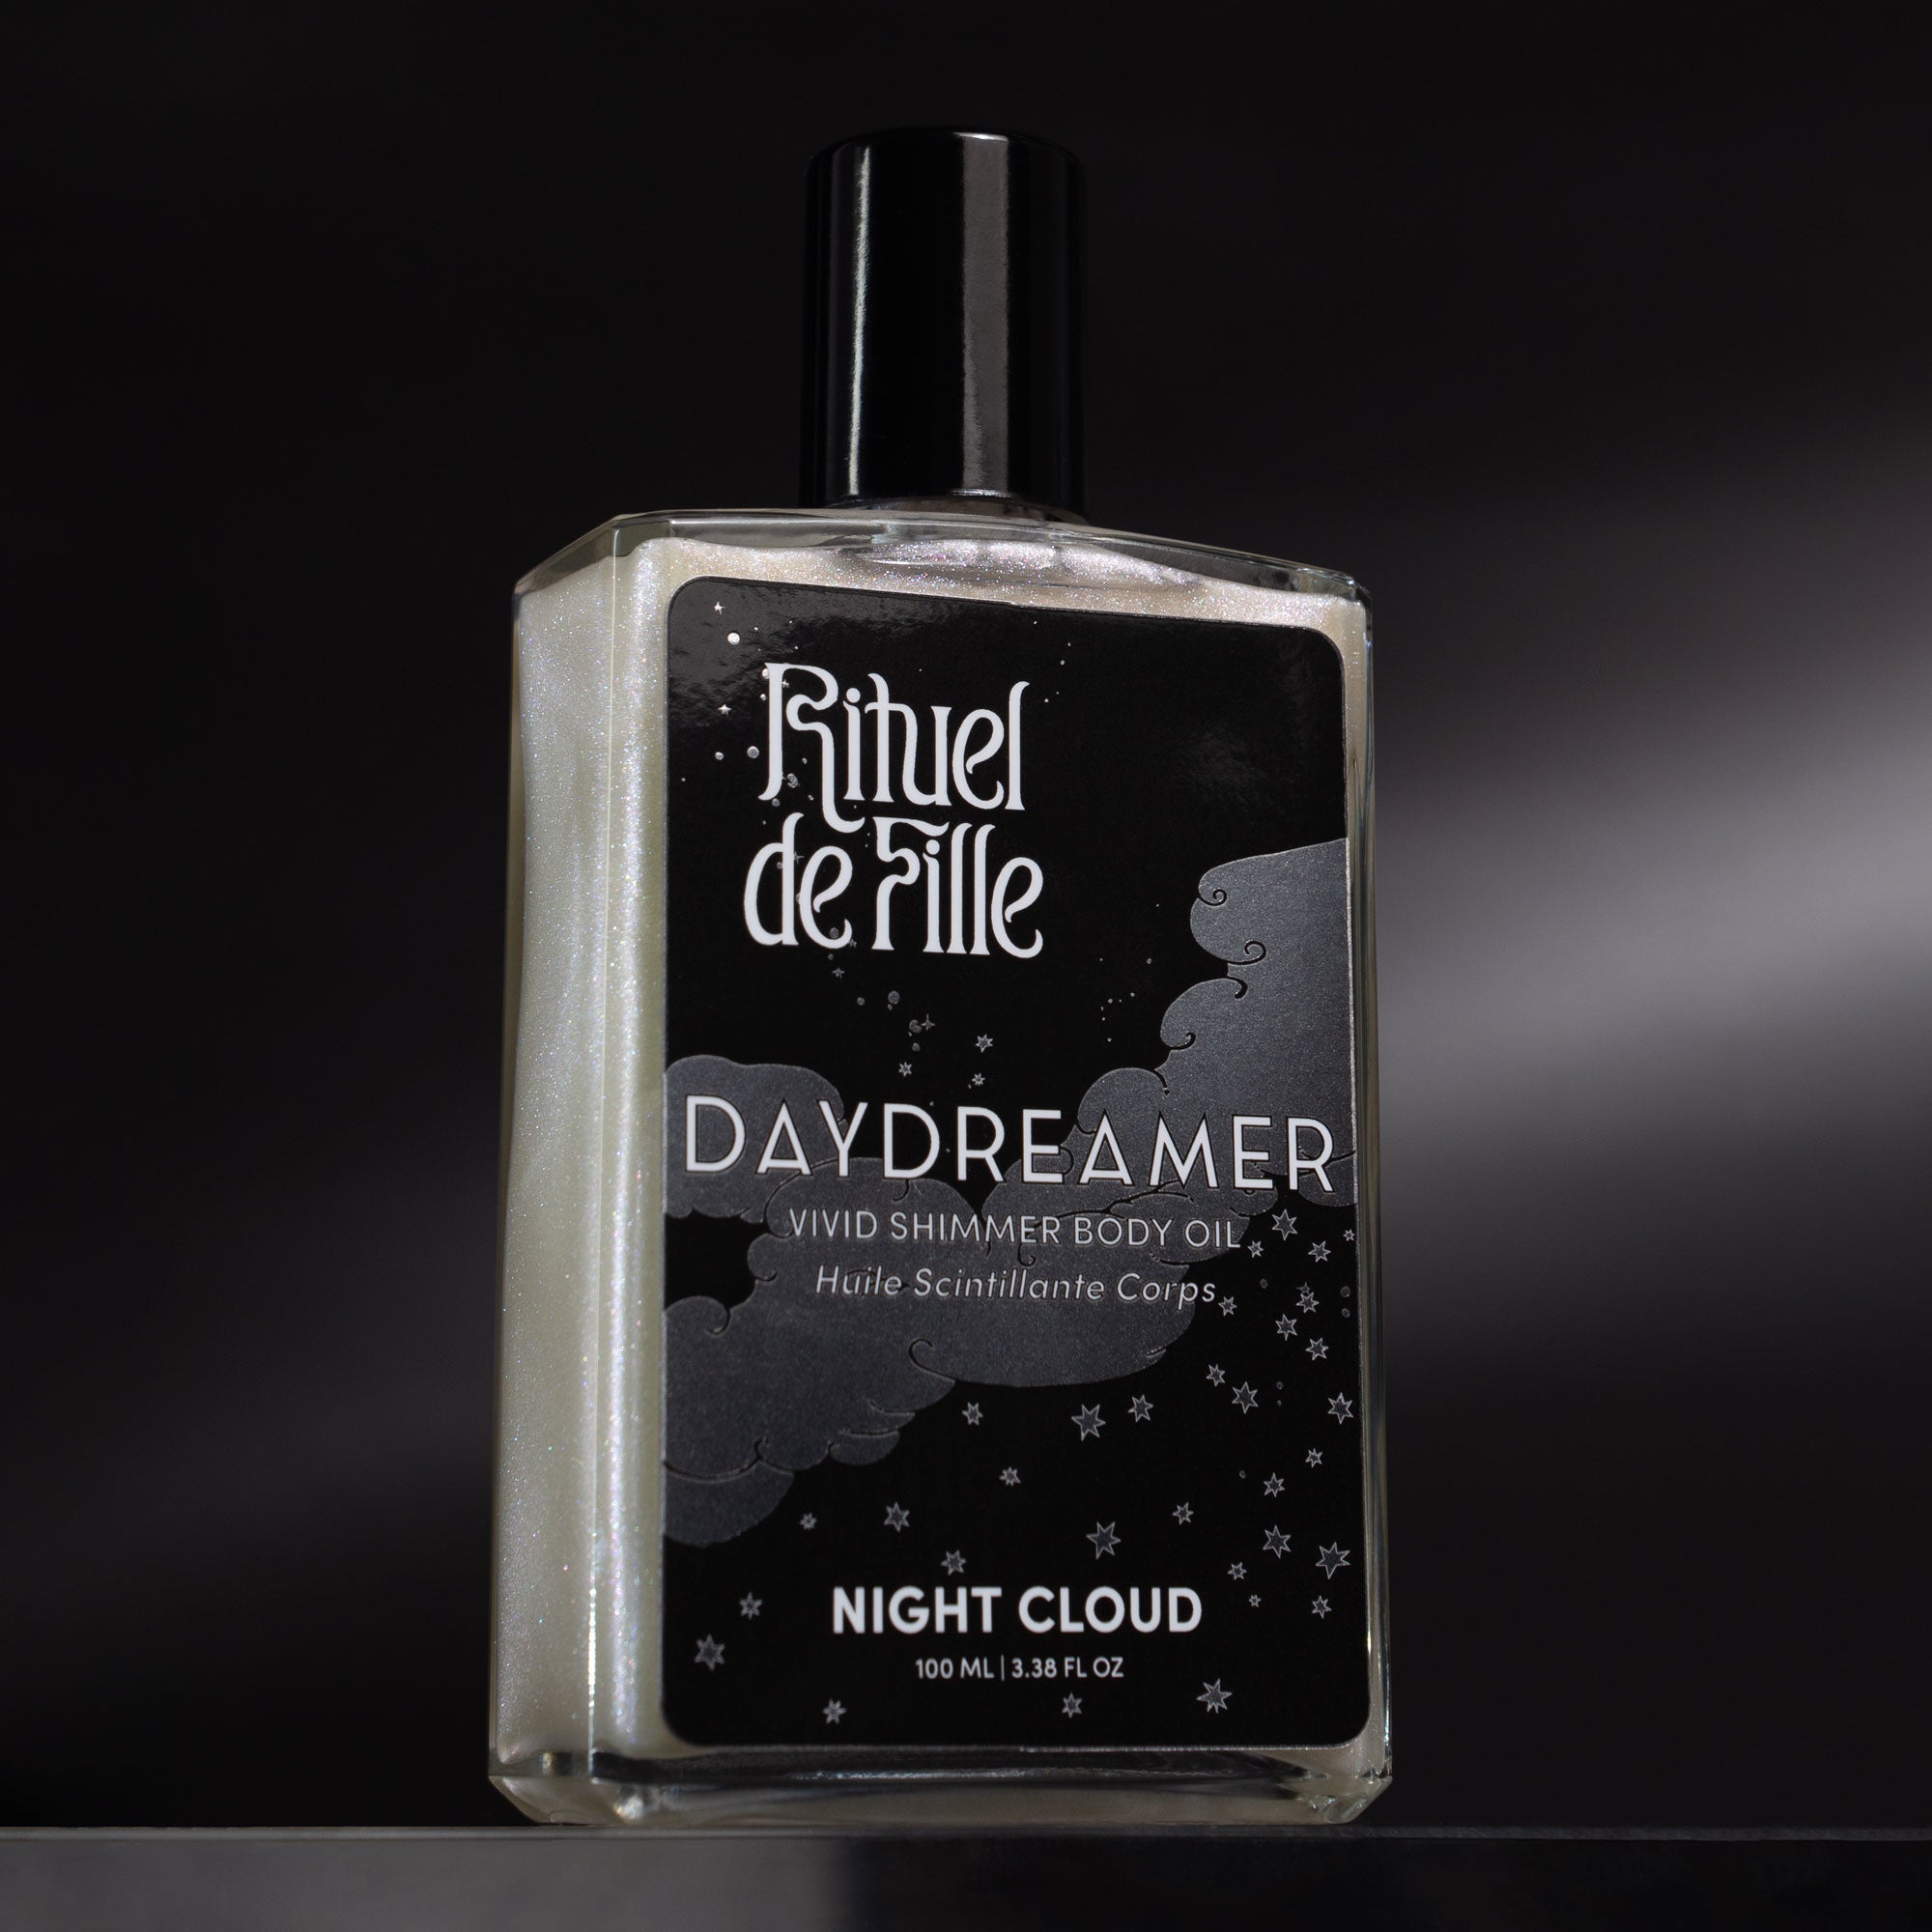 Night Cloud | Daydreamer Body Oil - Rituel de Fille